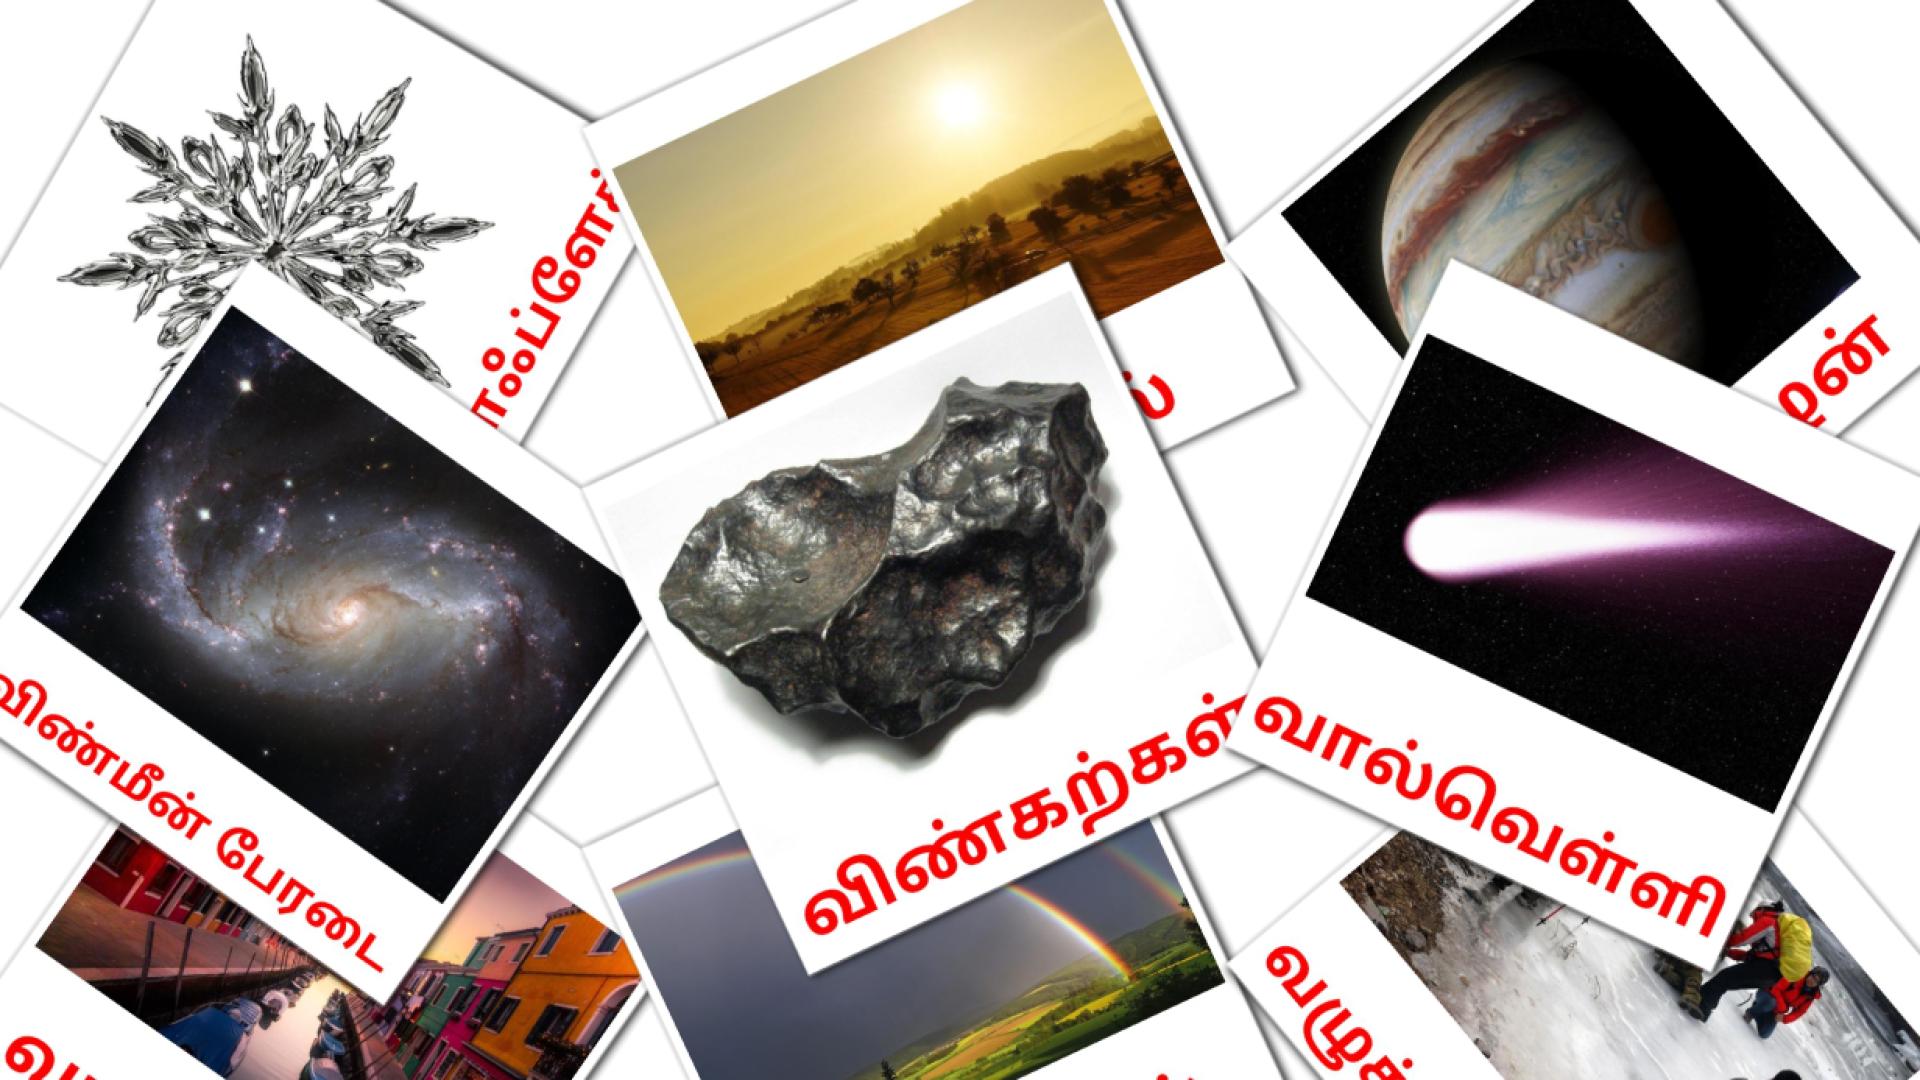 Tamilisch இயற்கைe Vokabelkarteikarten